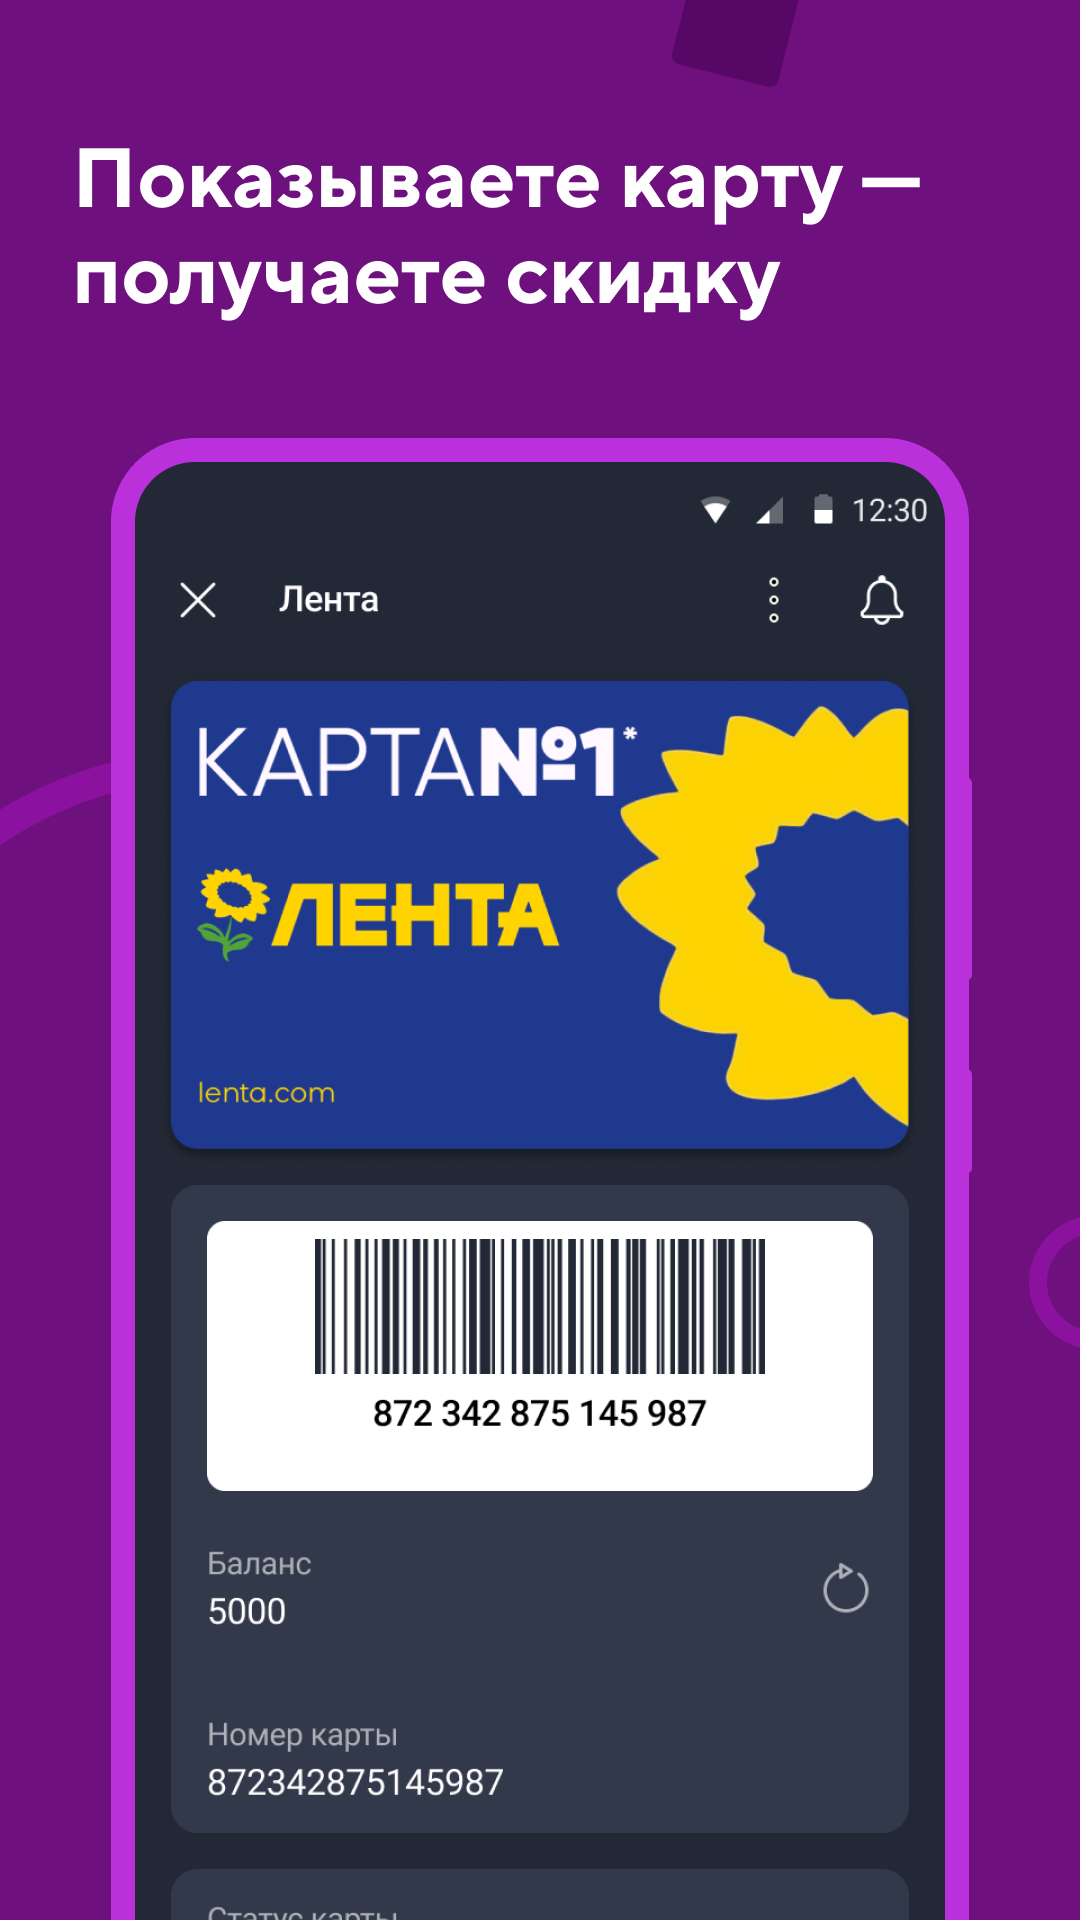 Android application Кошелёк: дисконтные карты screenshort